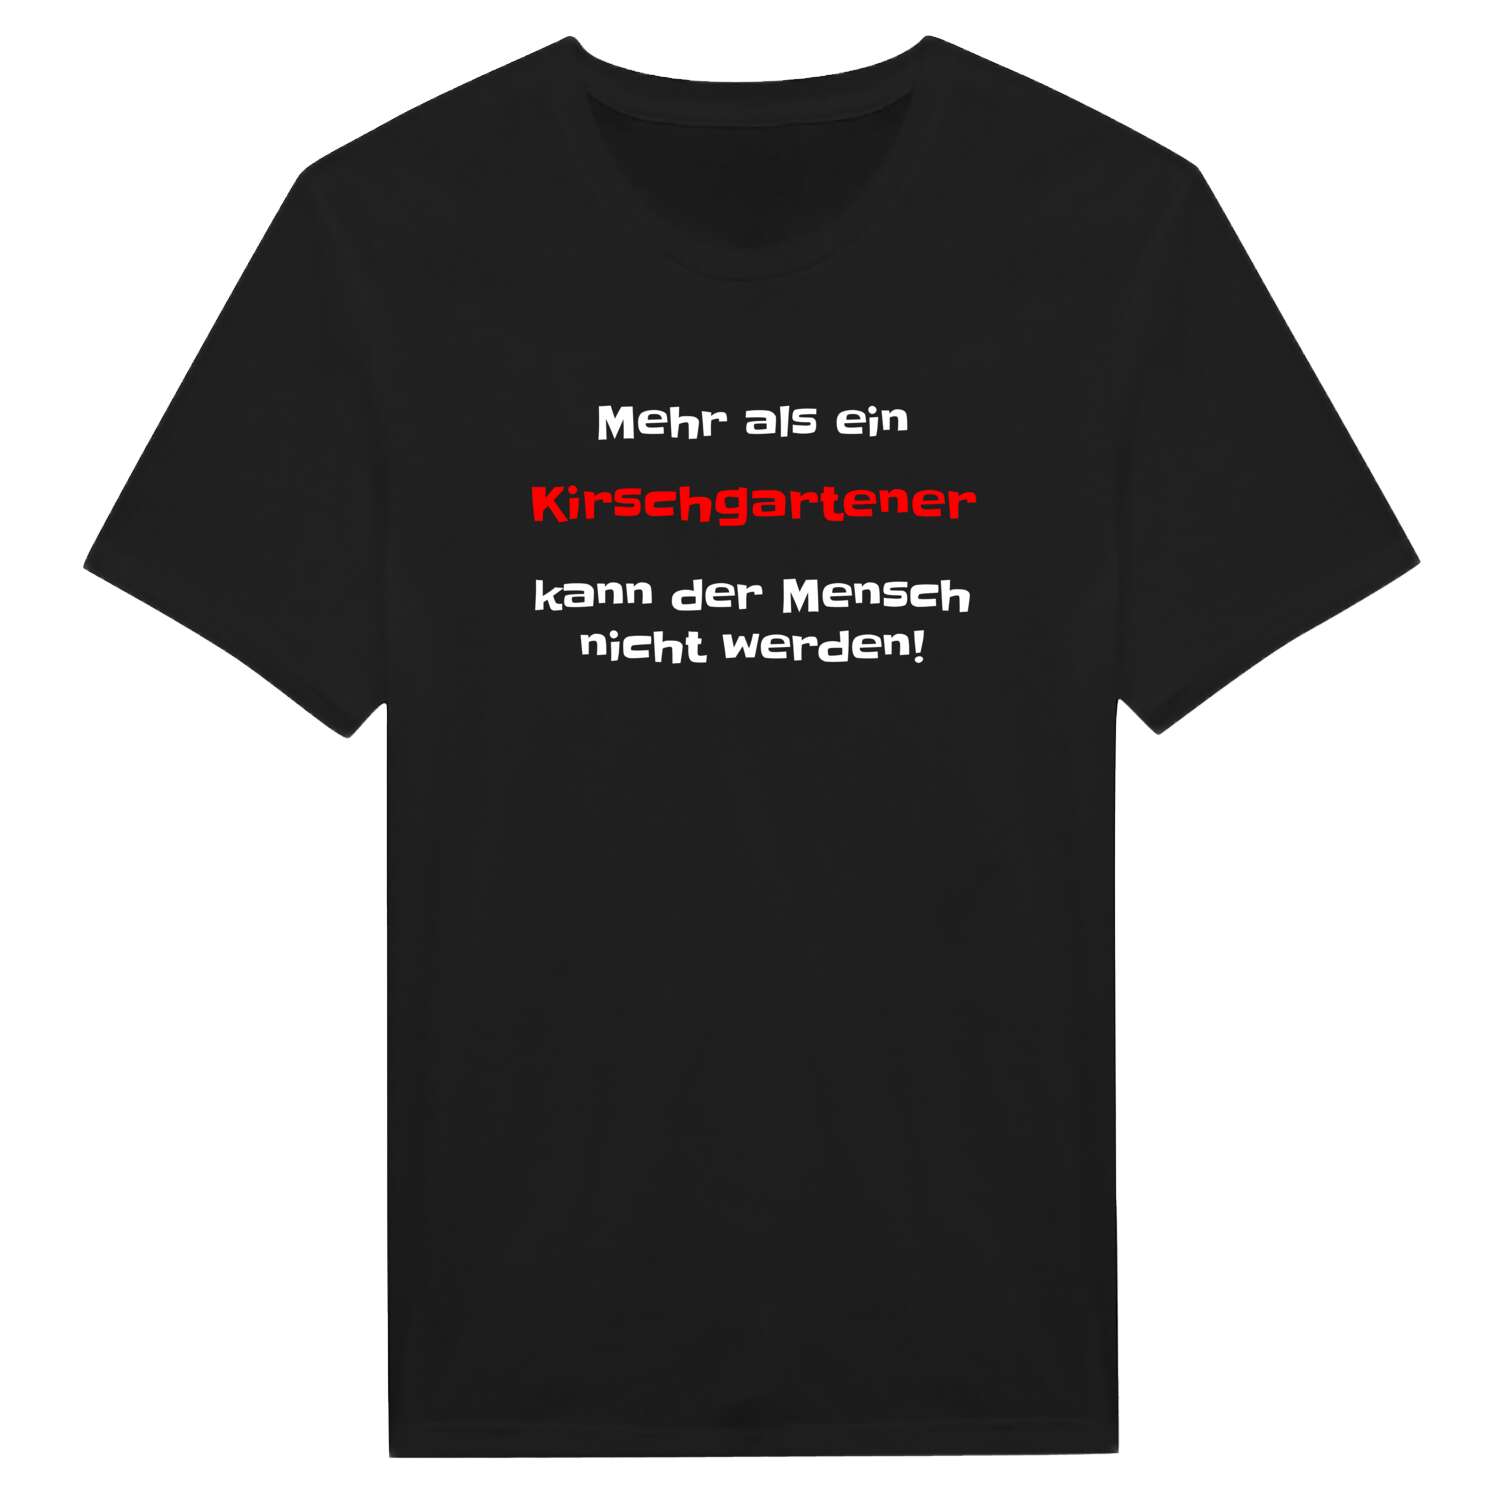 Kirschgarten T-Shirt »Mehr als ein«